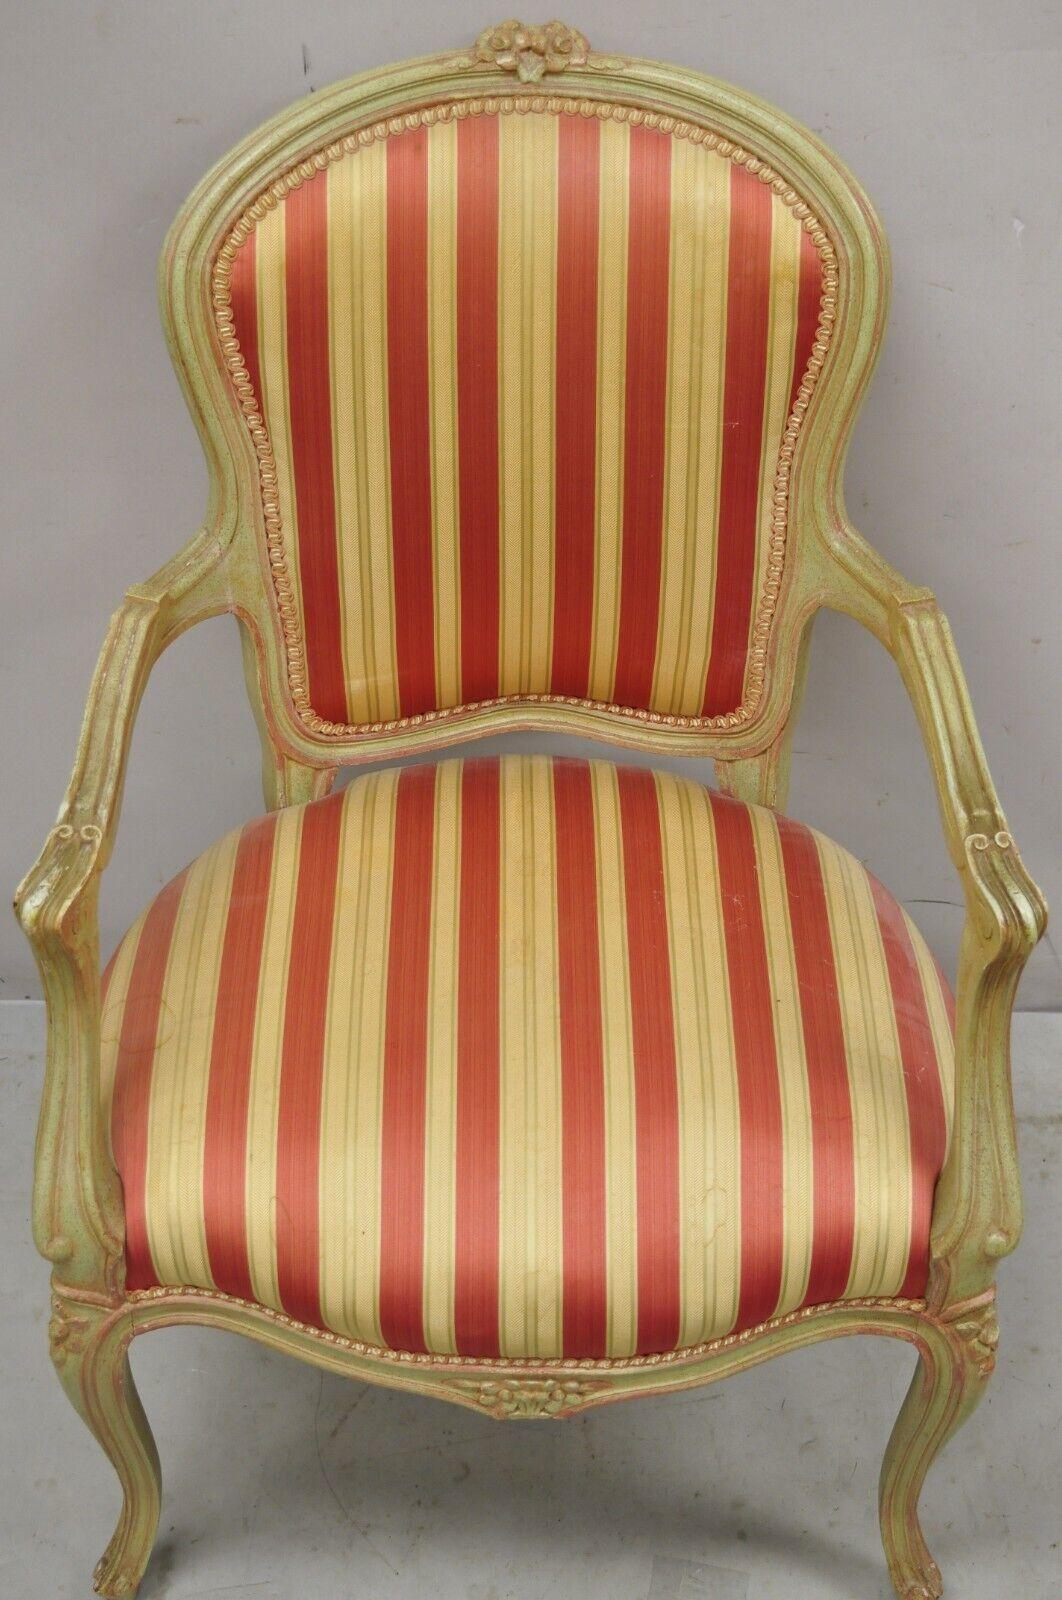 pink vintage chair